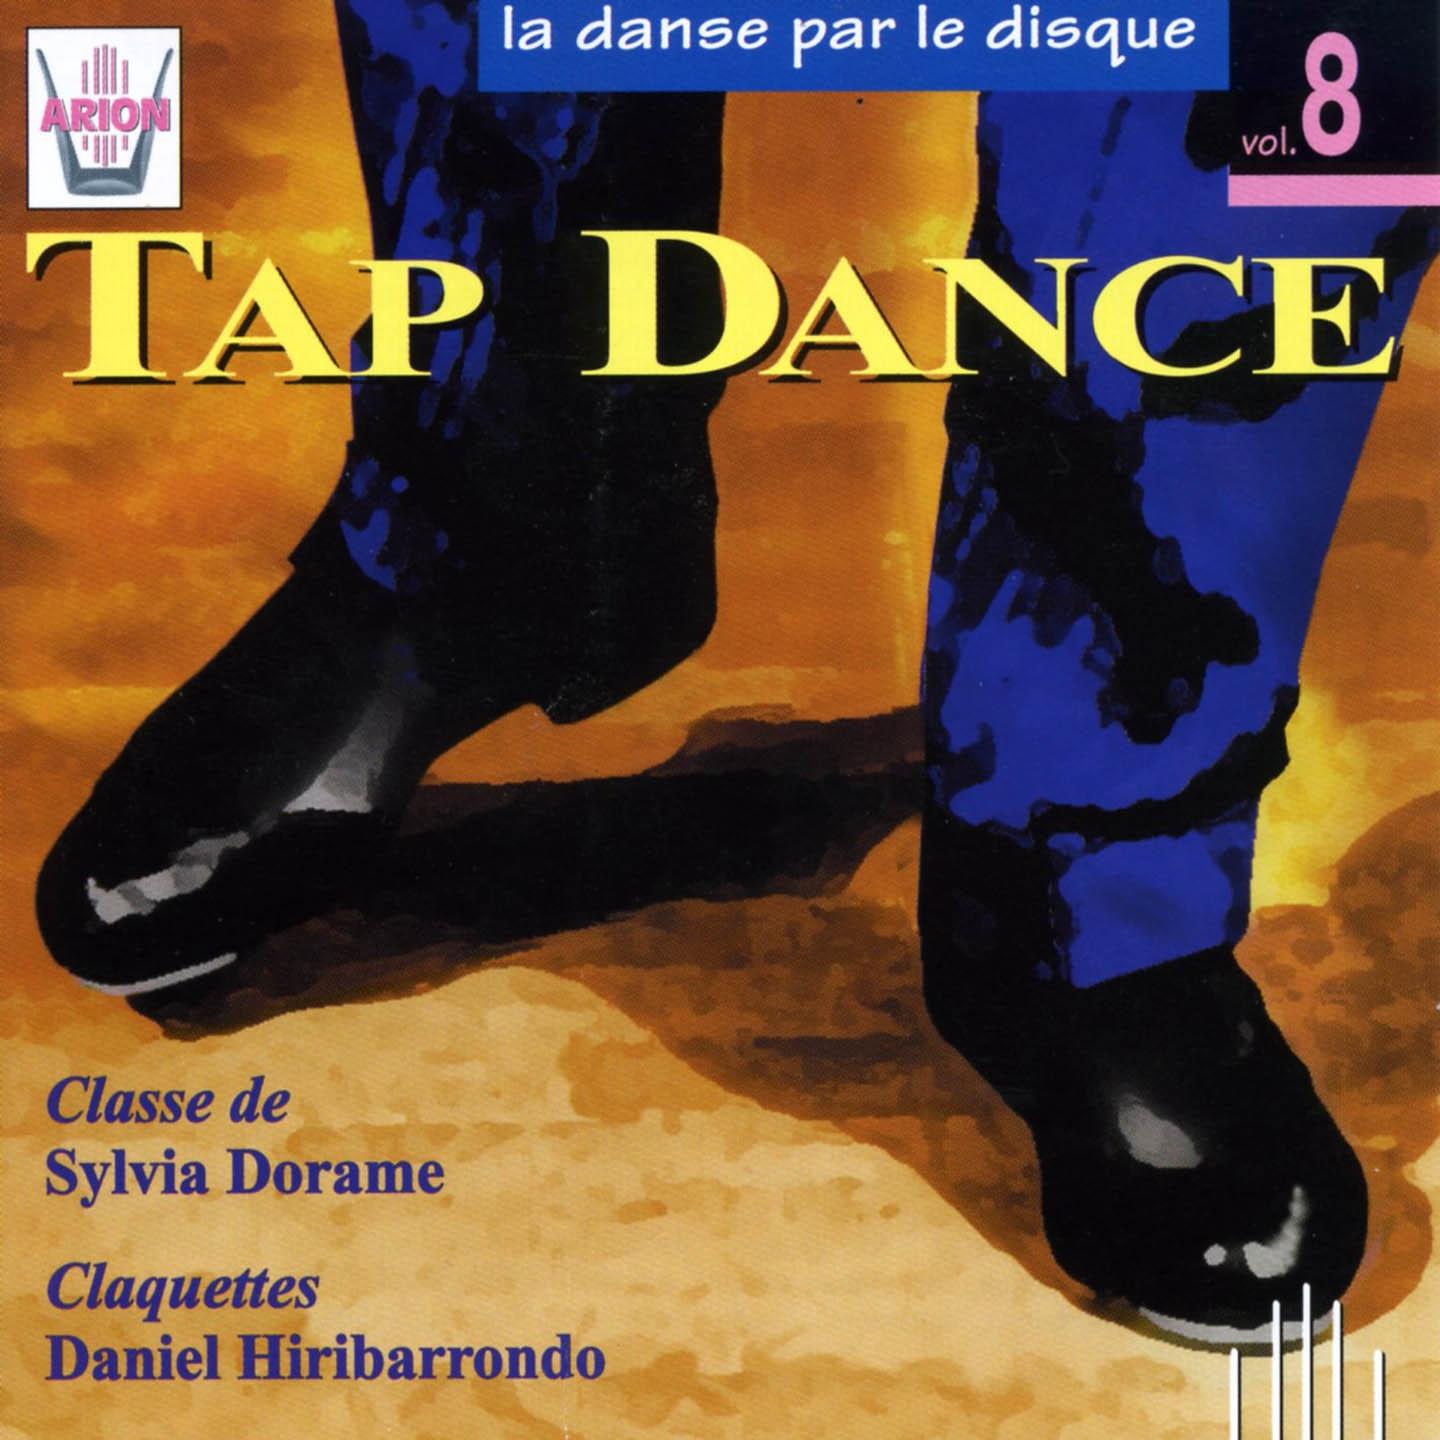 La danse par le disque, vol. 8 : Tap Dance, classe de Dorame